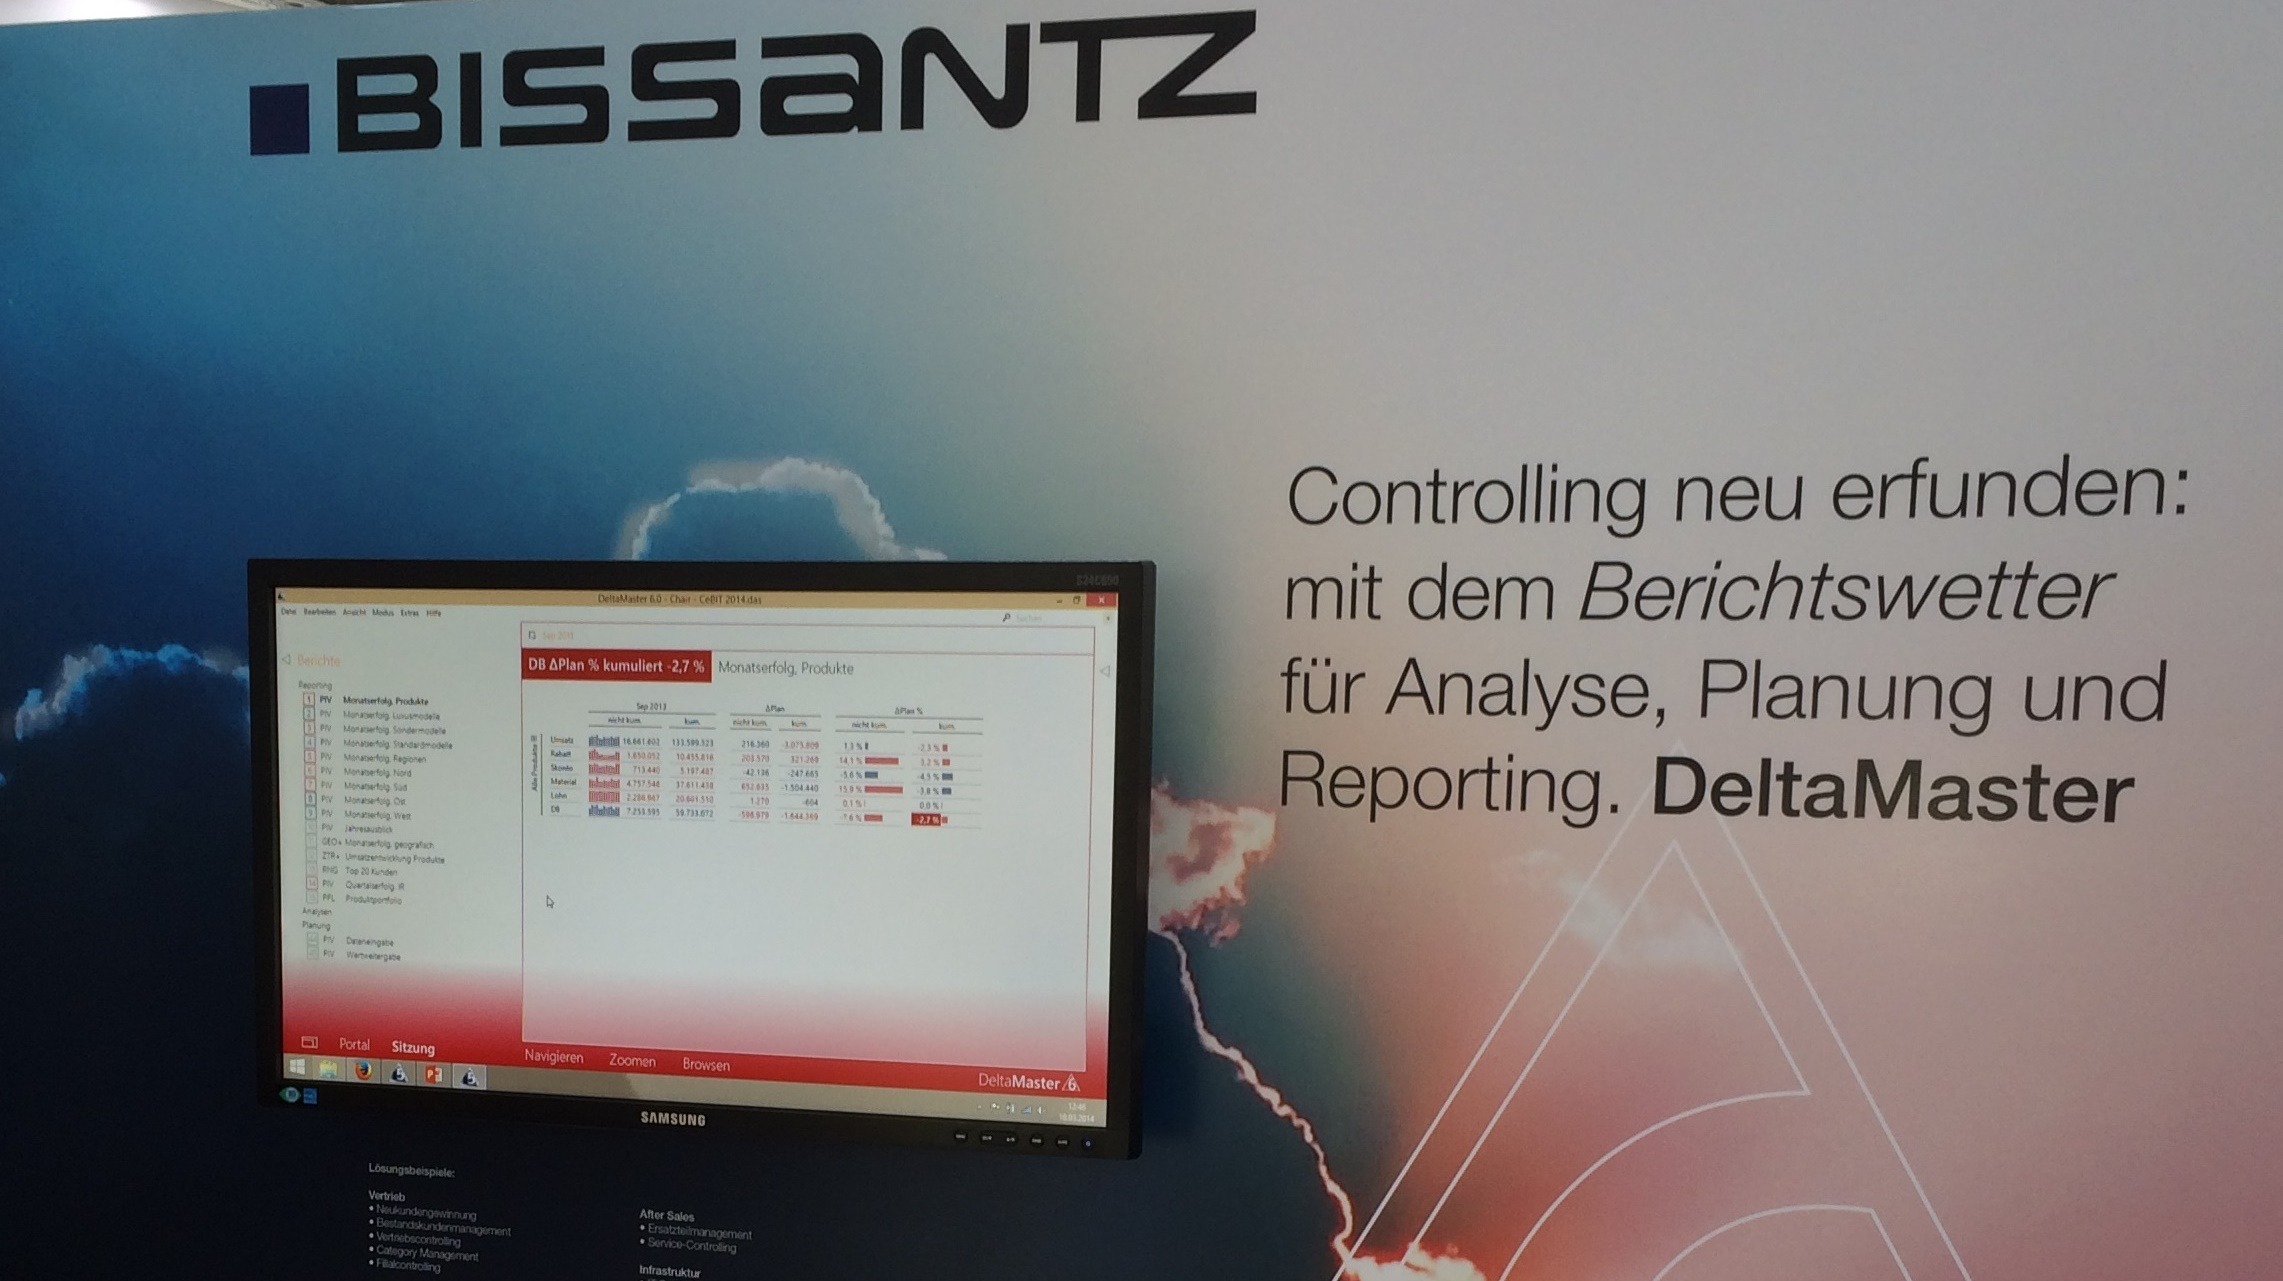 Cebit Hannover 2014: DeltaMaster 6 - Berichtswetter für Ihr Controlling - Cebit Hannover 2014: Bissantz stellt die neue Generation von BI-Software vor